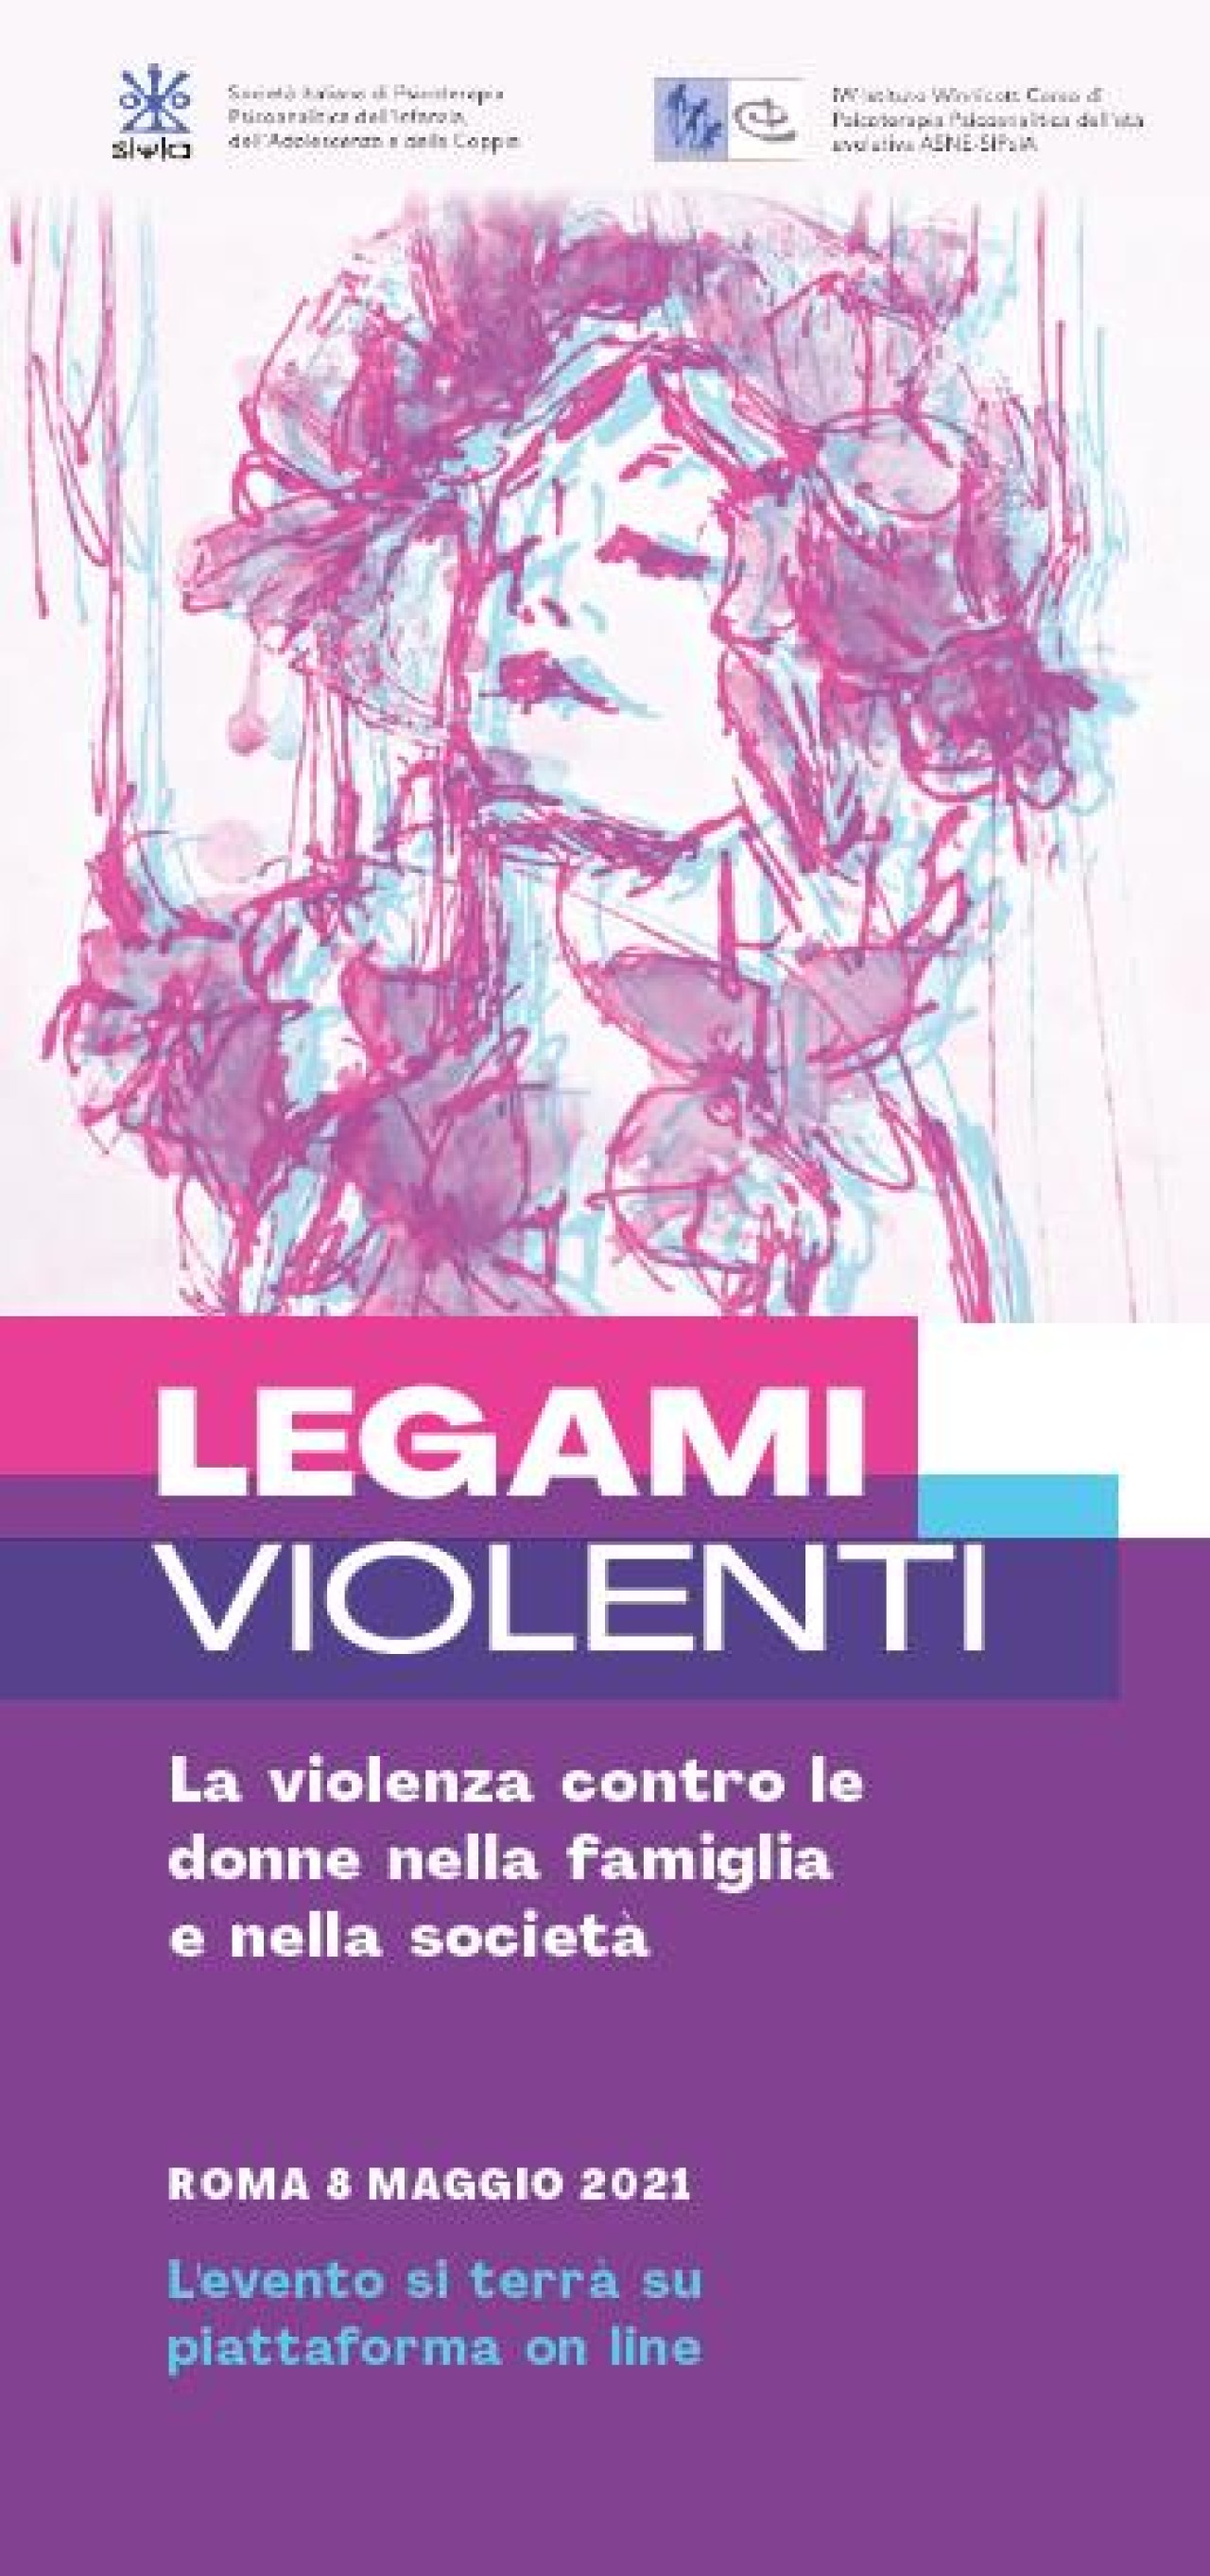 LEGAMI VIOLENTI – La violenza contro le donne nella famiglia e nella società